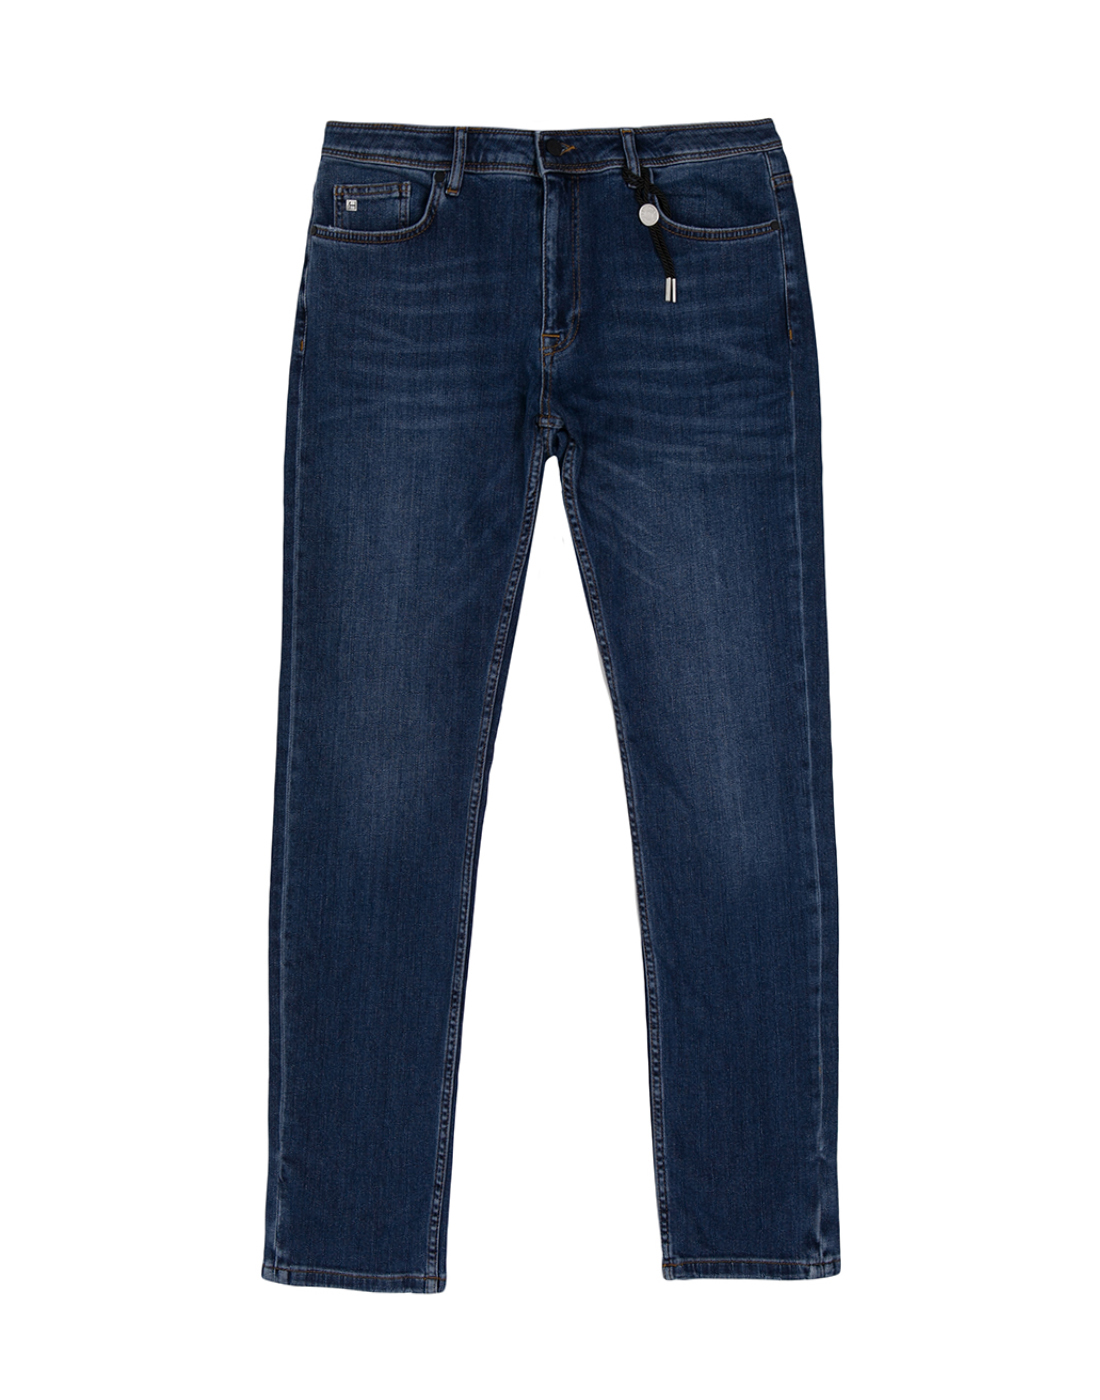 Мужские темно-синие джинсы Hiltl  S74301 42 45200-1